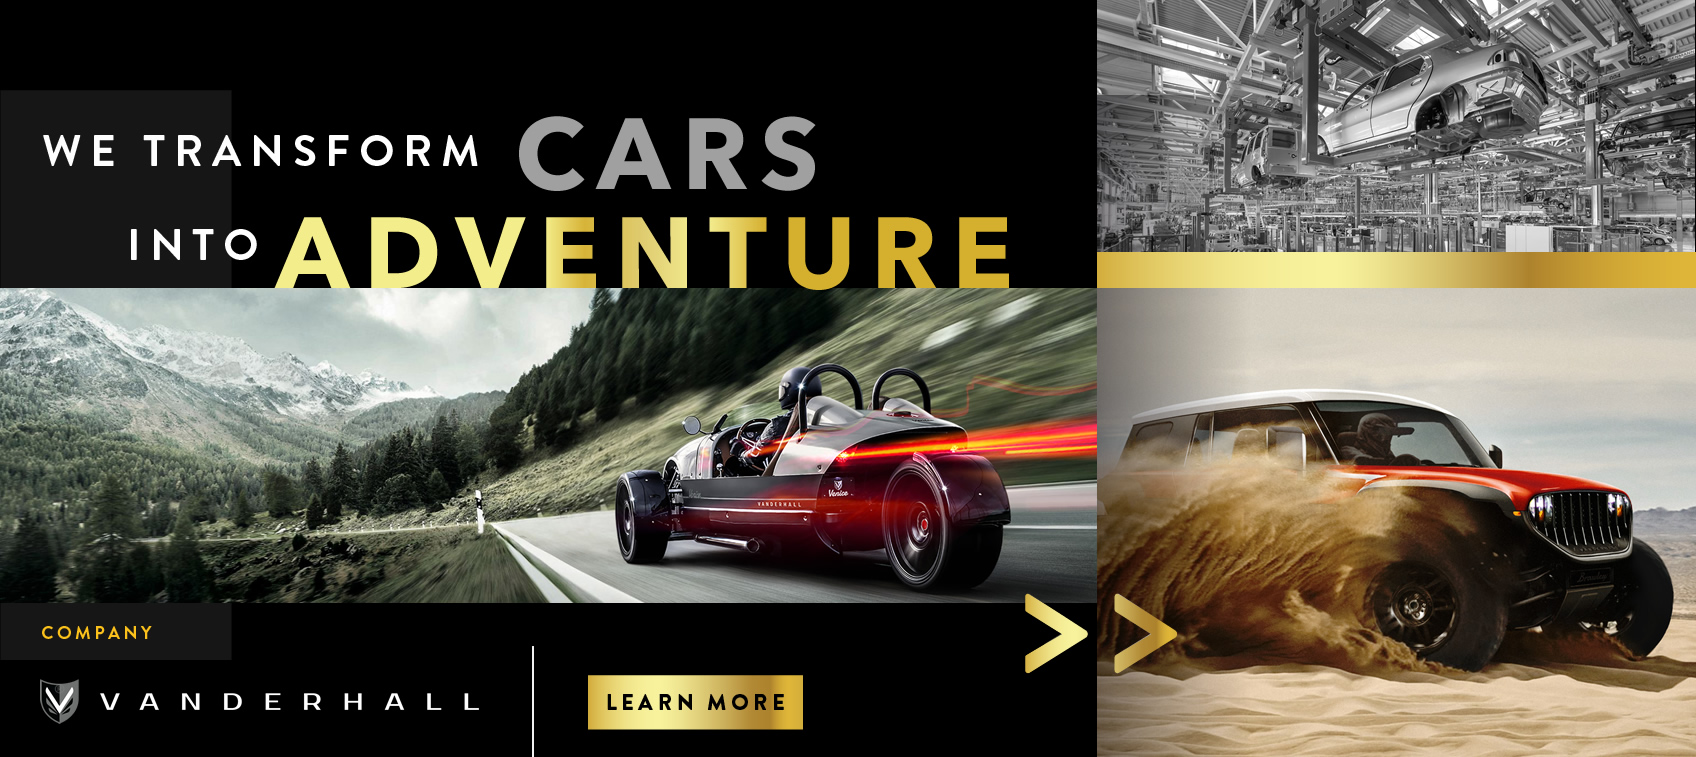 Vanderhall transforms cars into adventure.